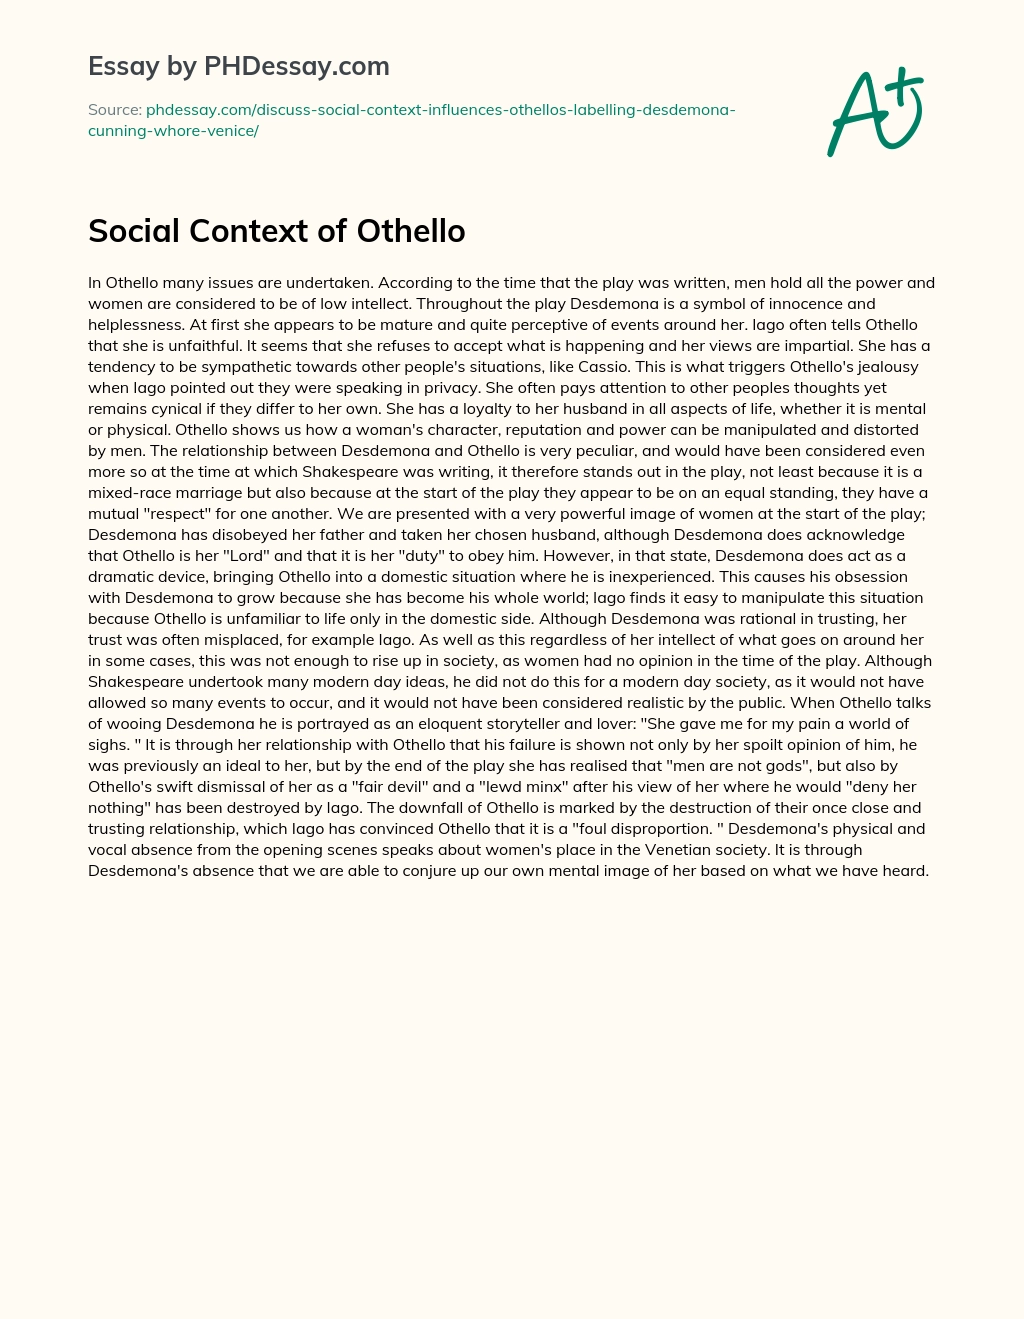 Social Context of Othello essay